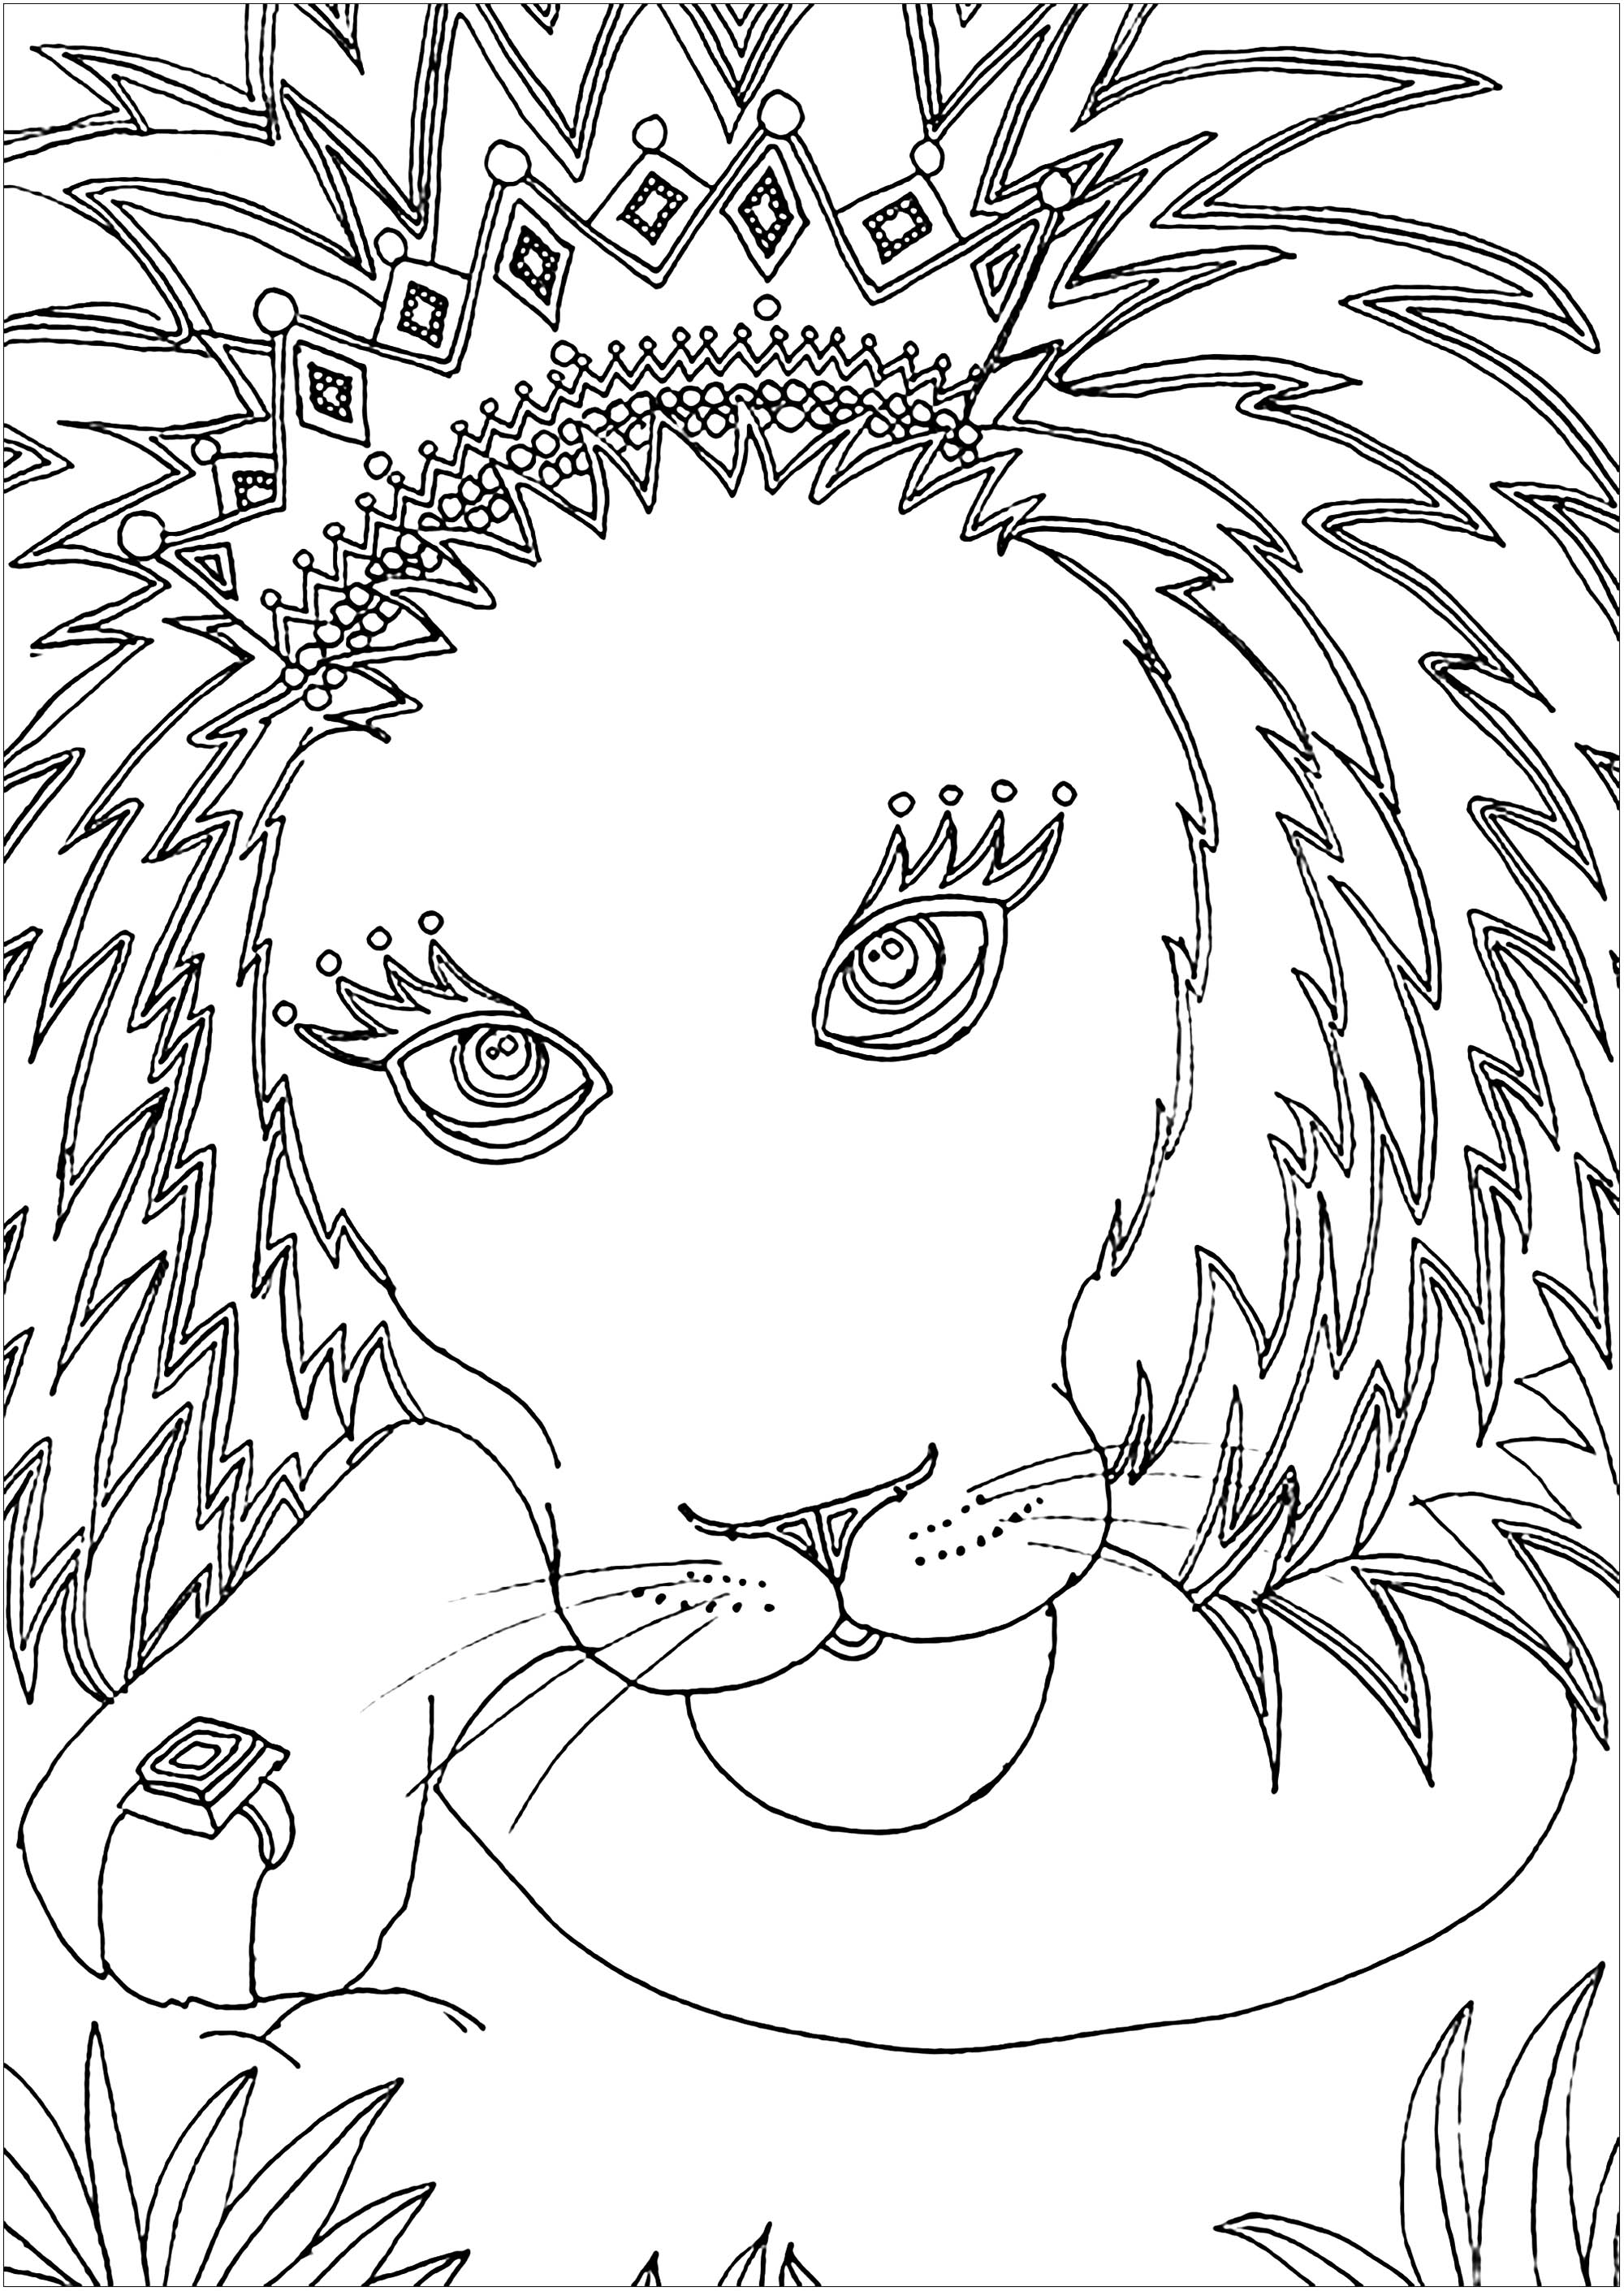 Löwe mit seiner Krone, Künstler : Kerozen